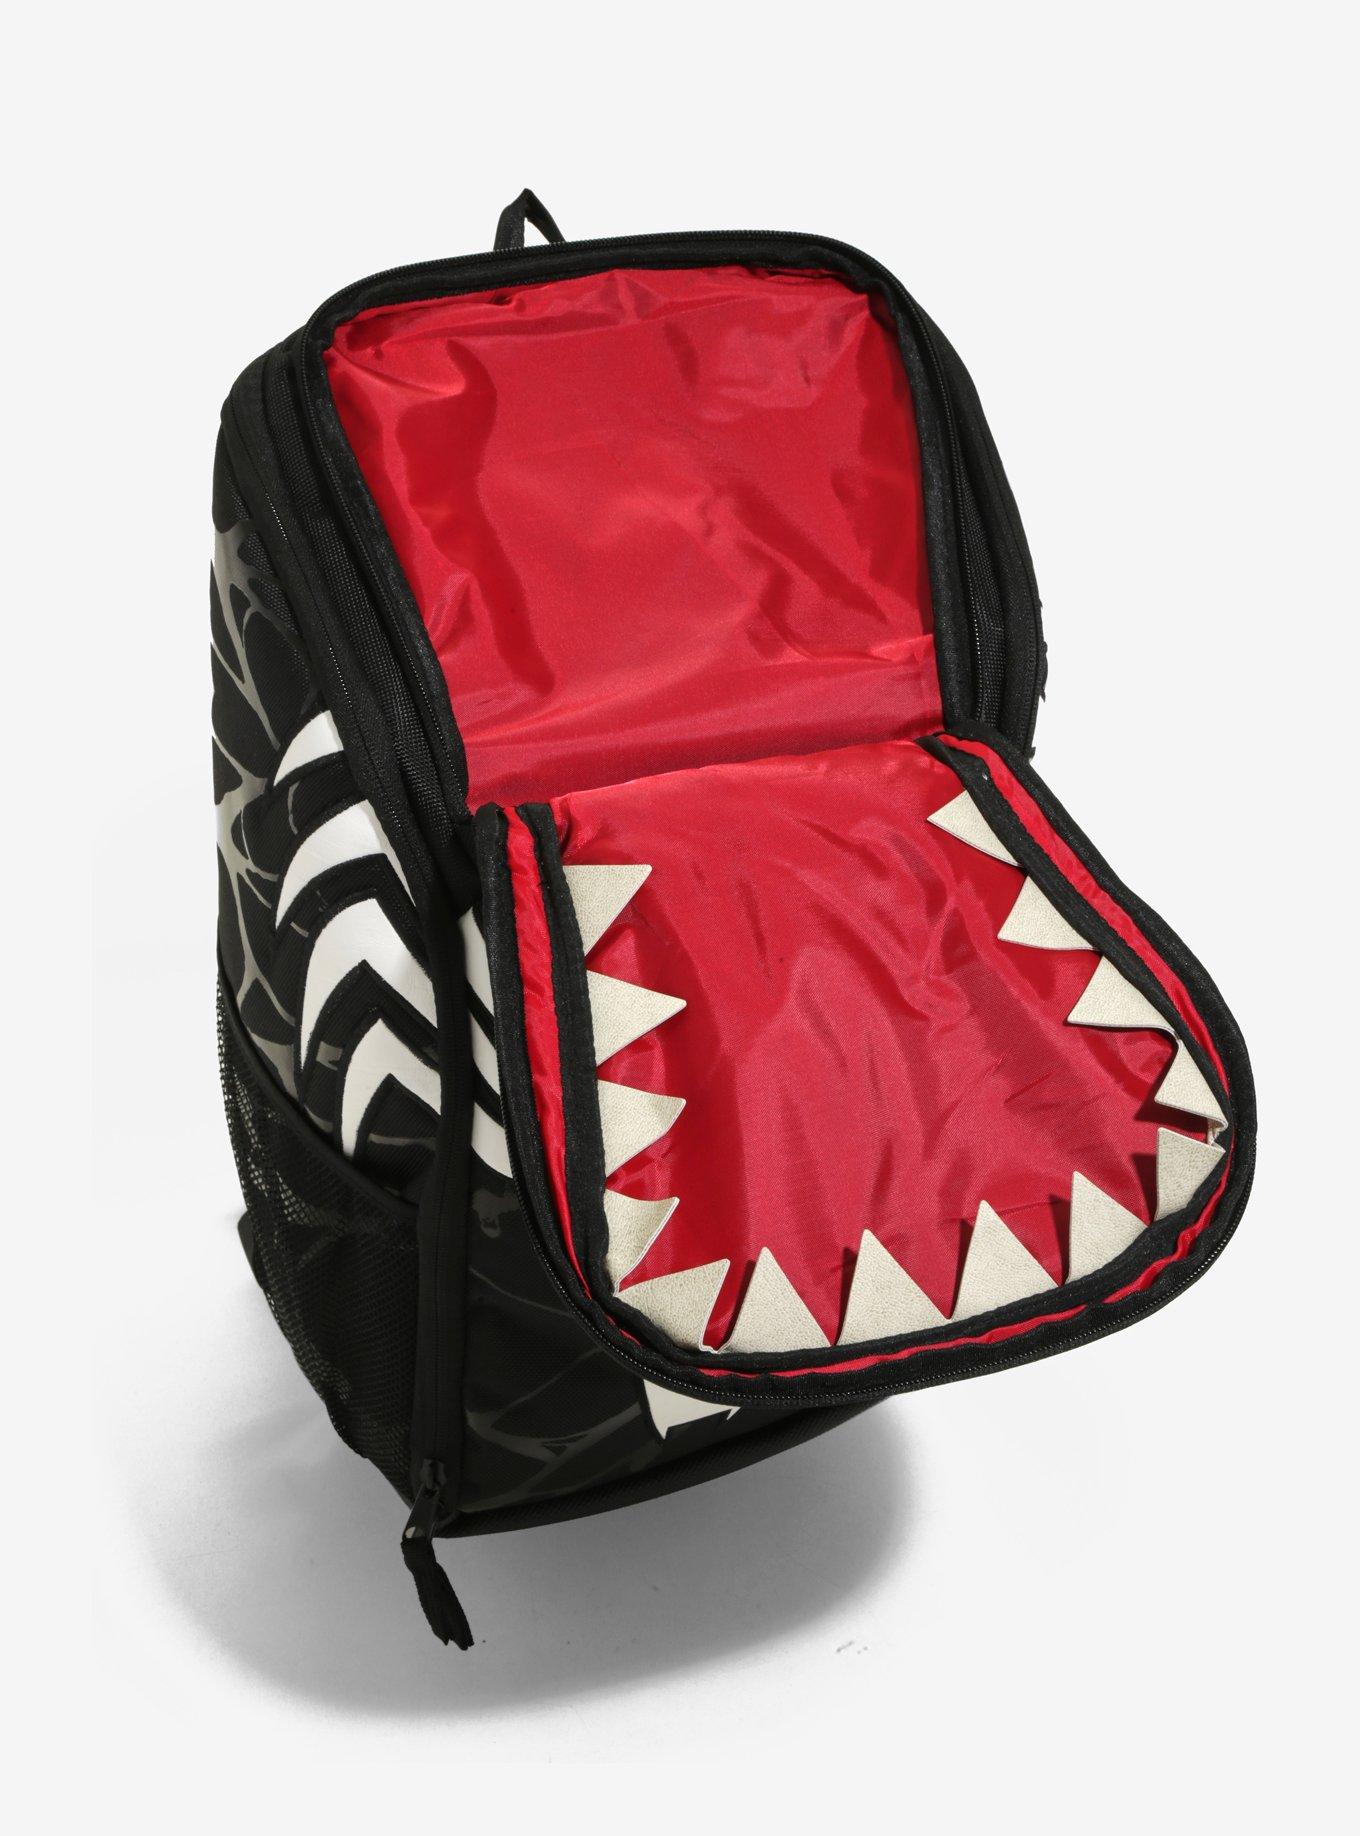 Marvel Venom Built-Up Backpack, , alternate